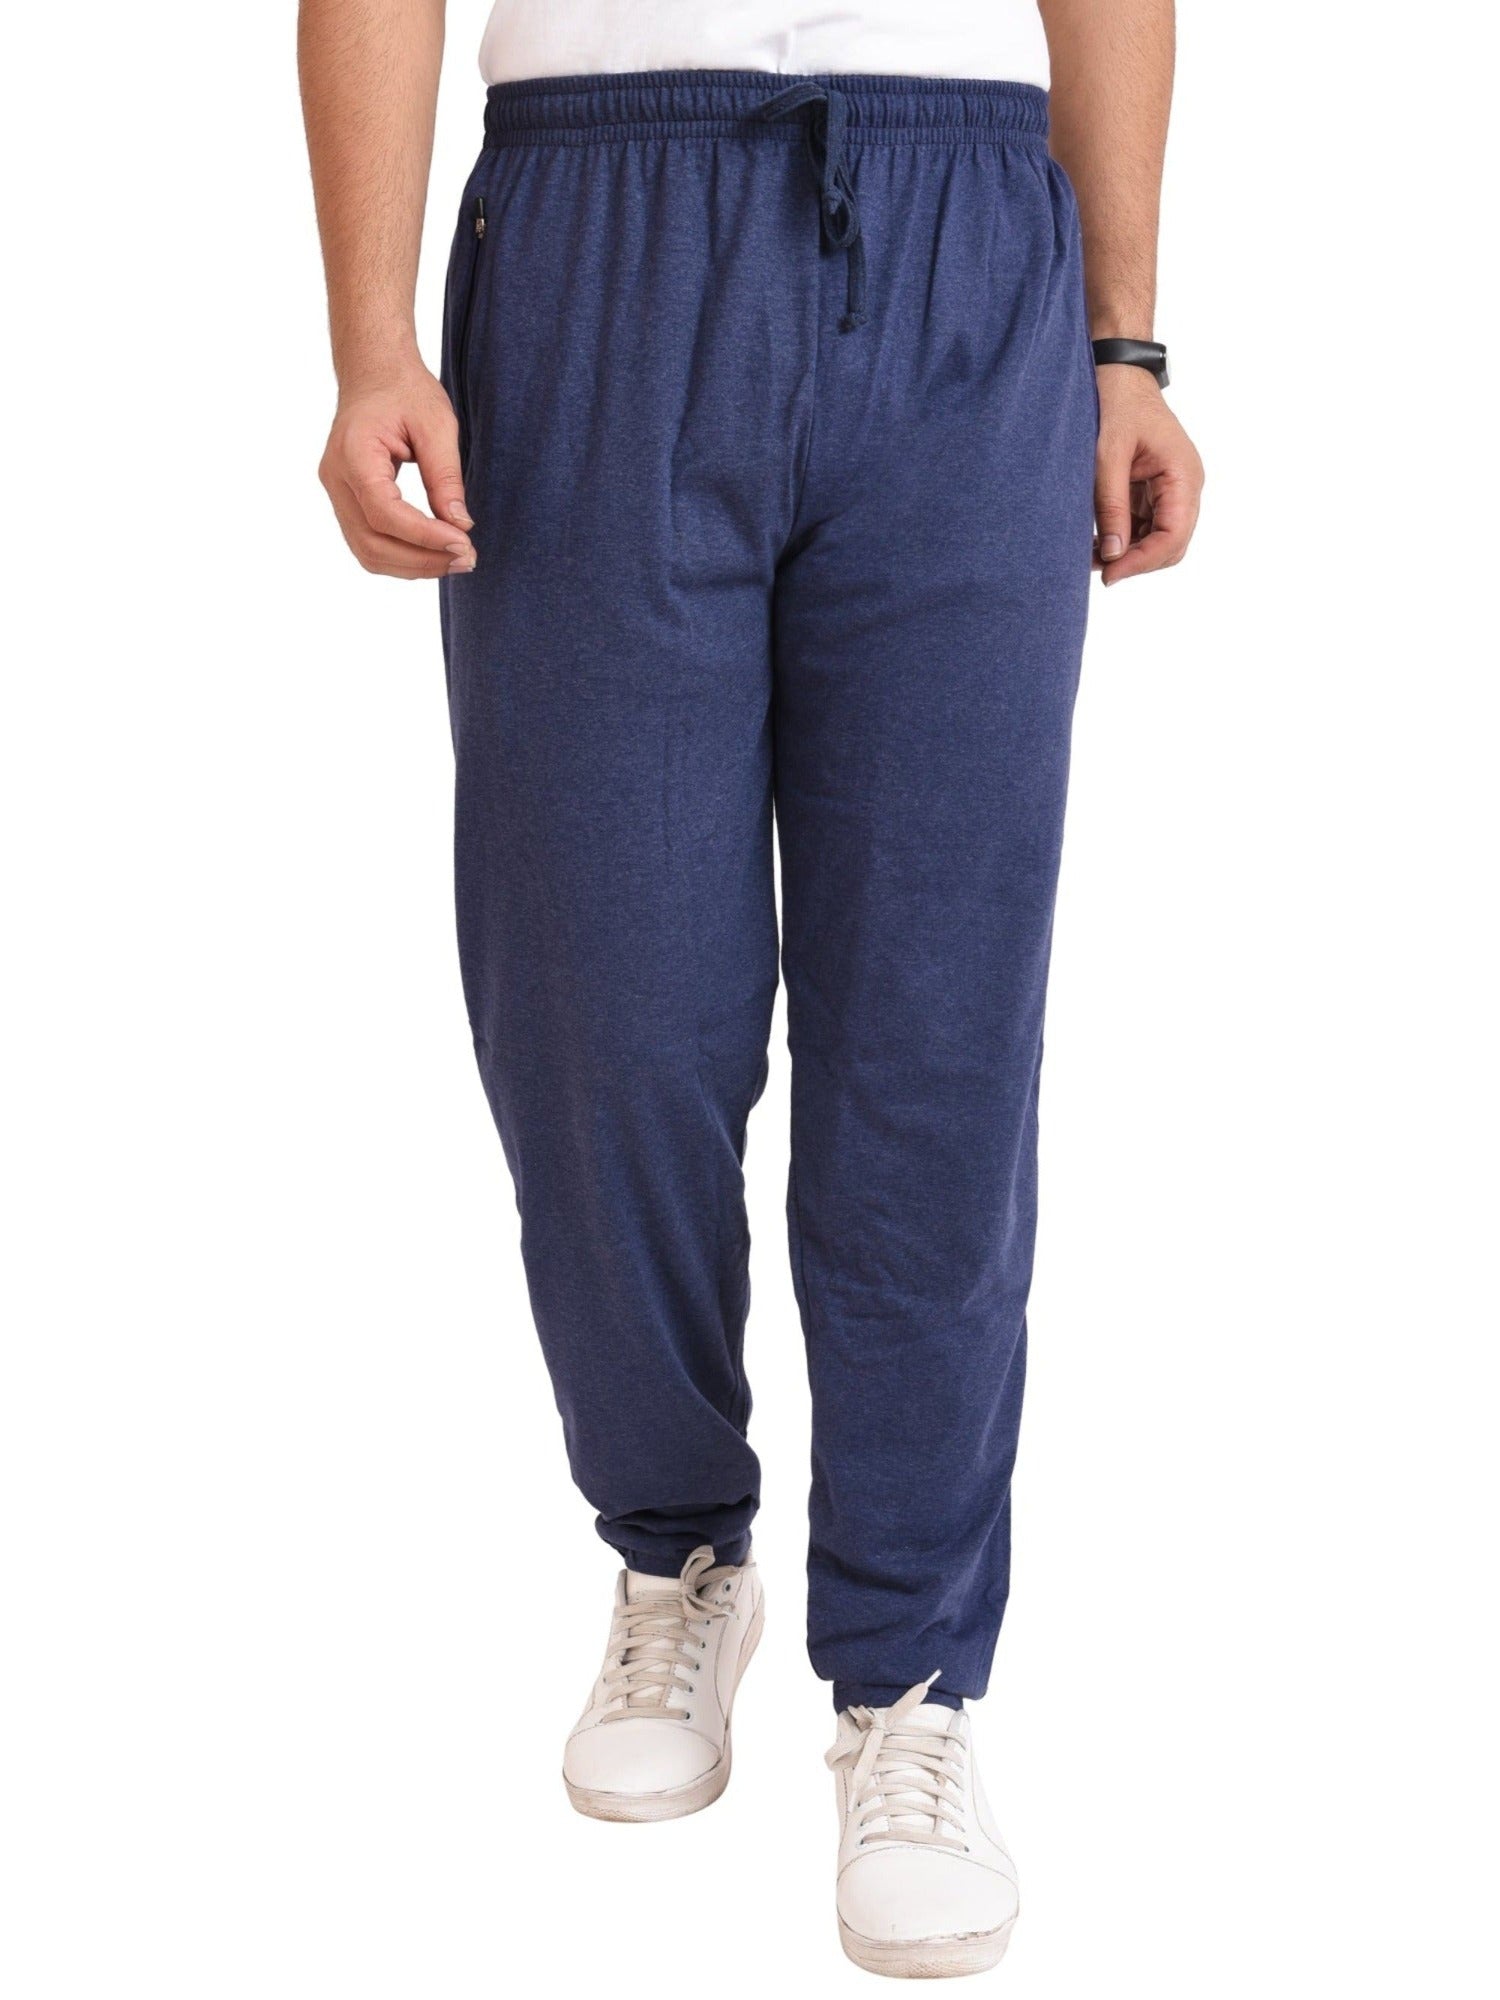 Men's Cotton TRACK PANTS | DENIM BLUE , front view